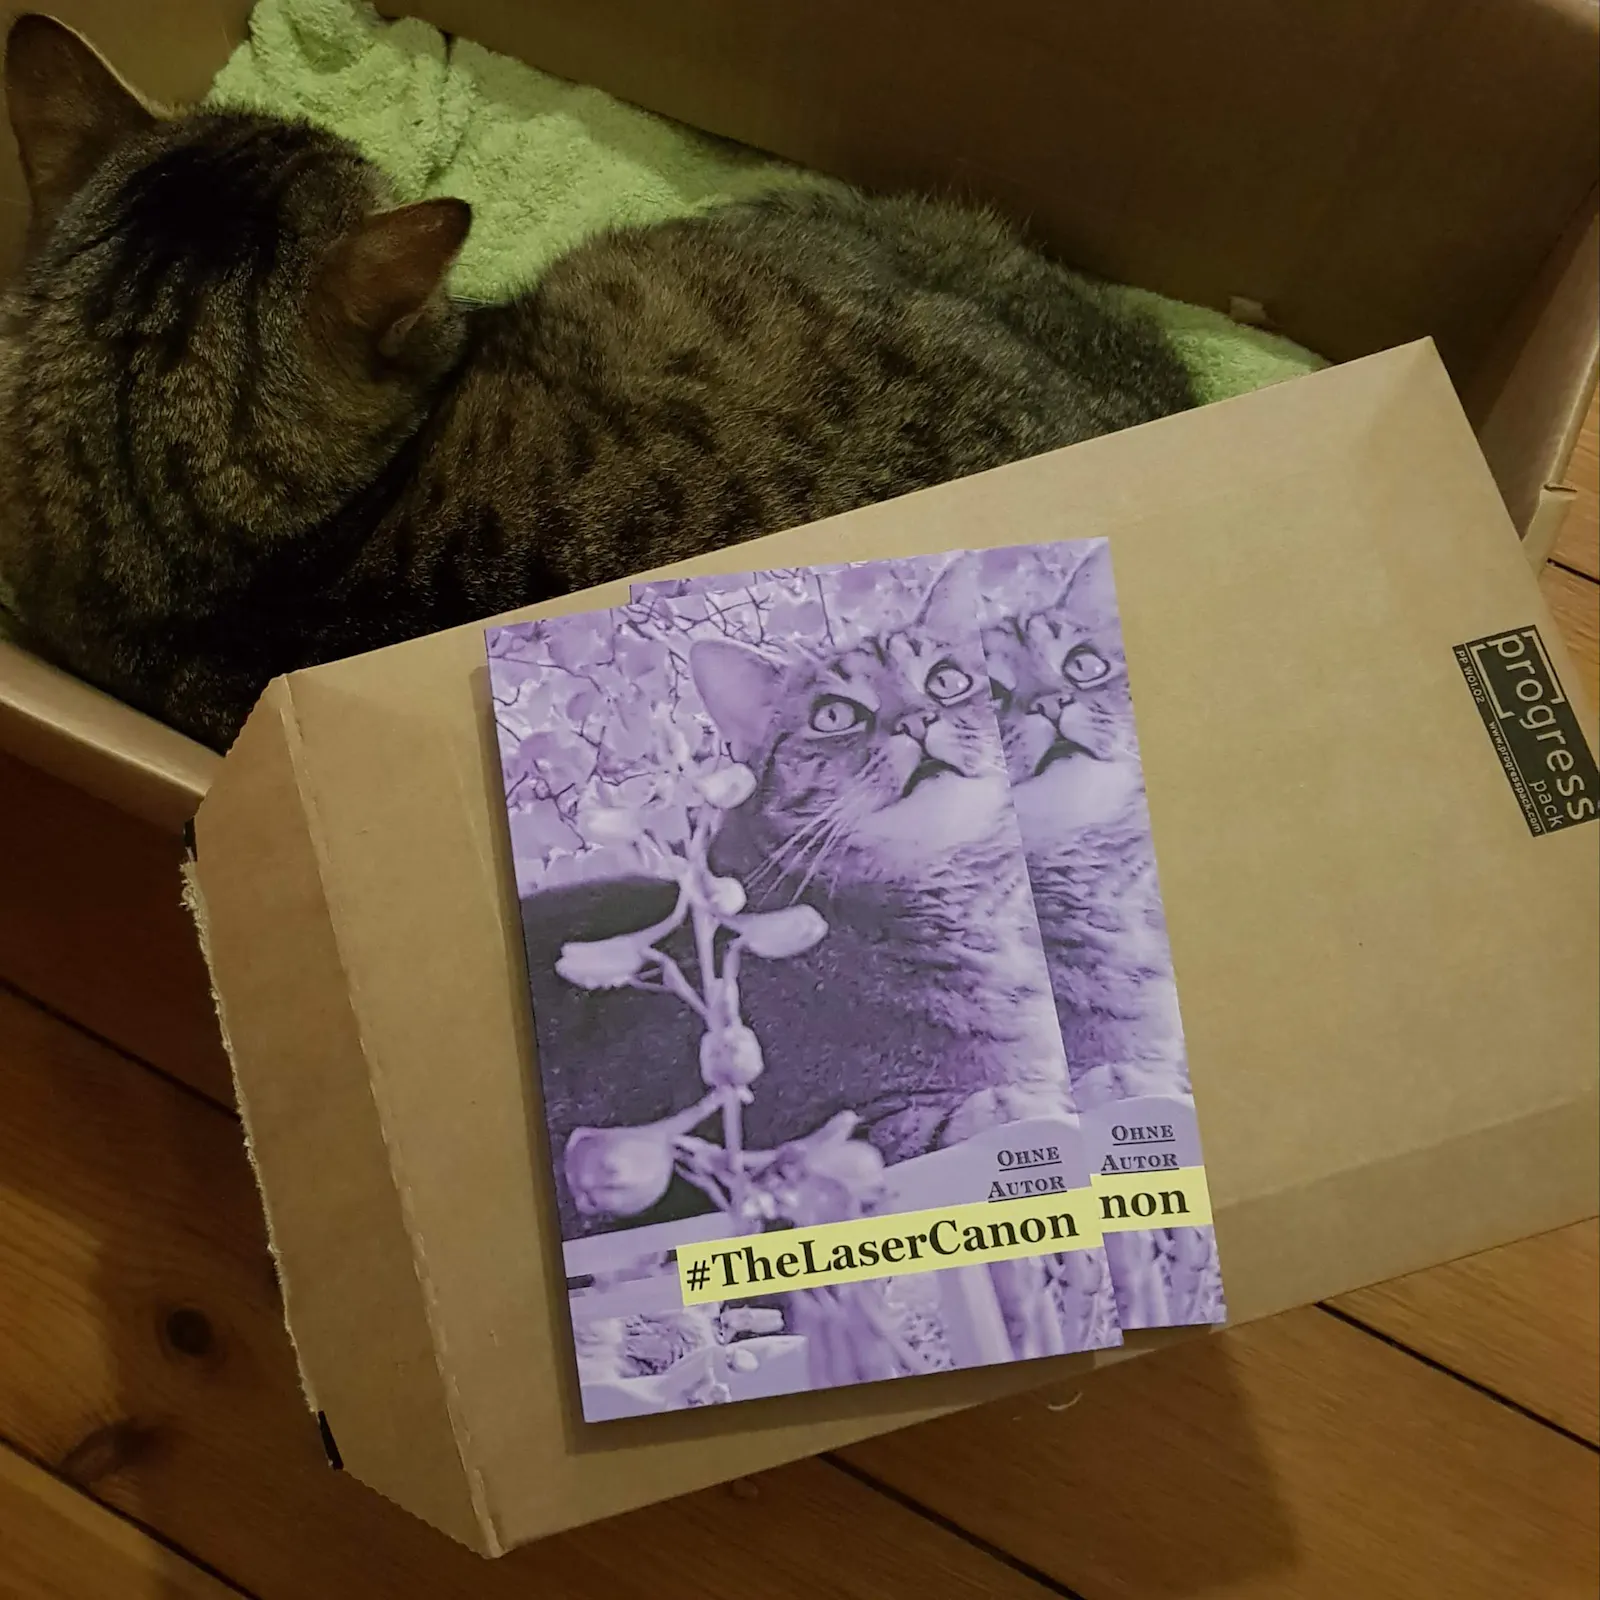 Kiste mit Katze darin, davor zwei Exemplare des Buchs "The Laser Canon"